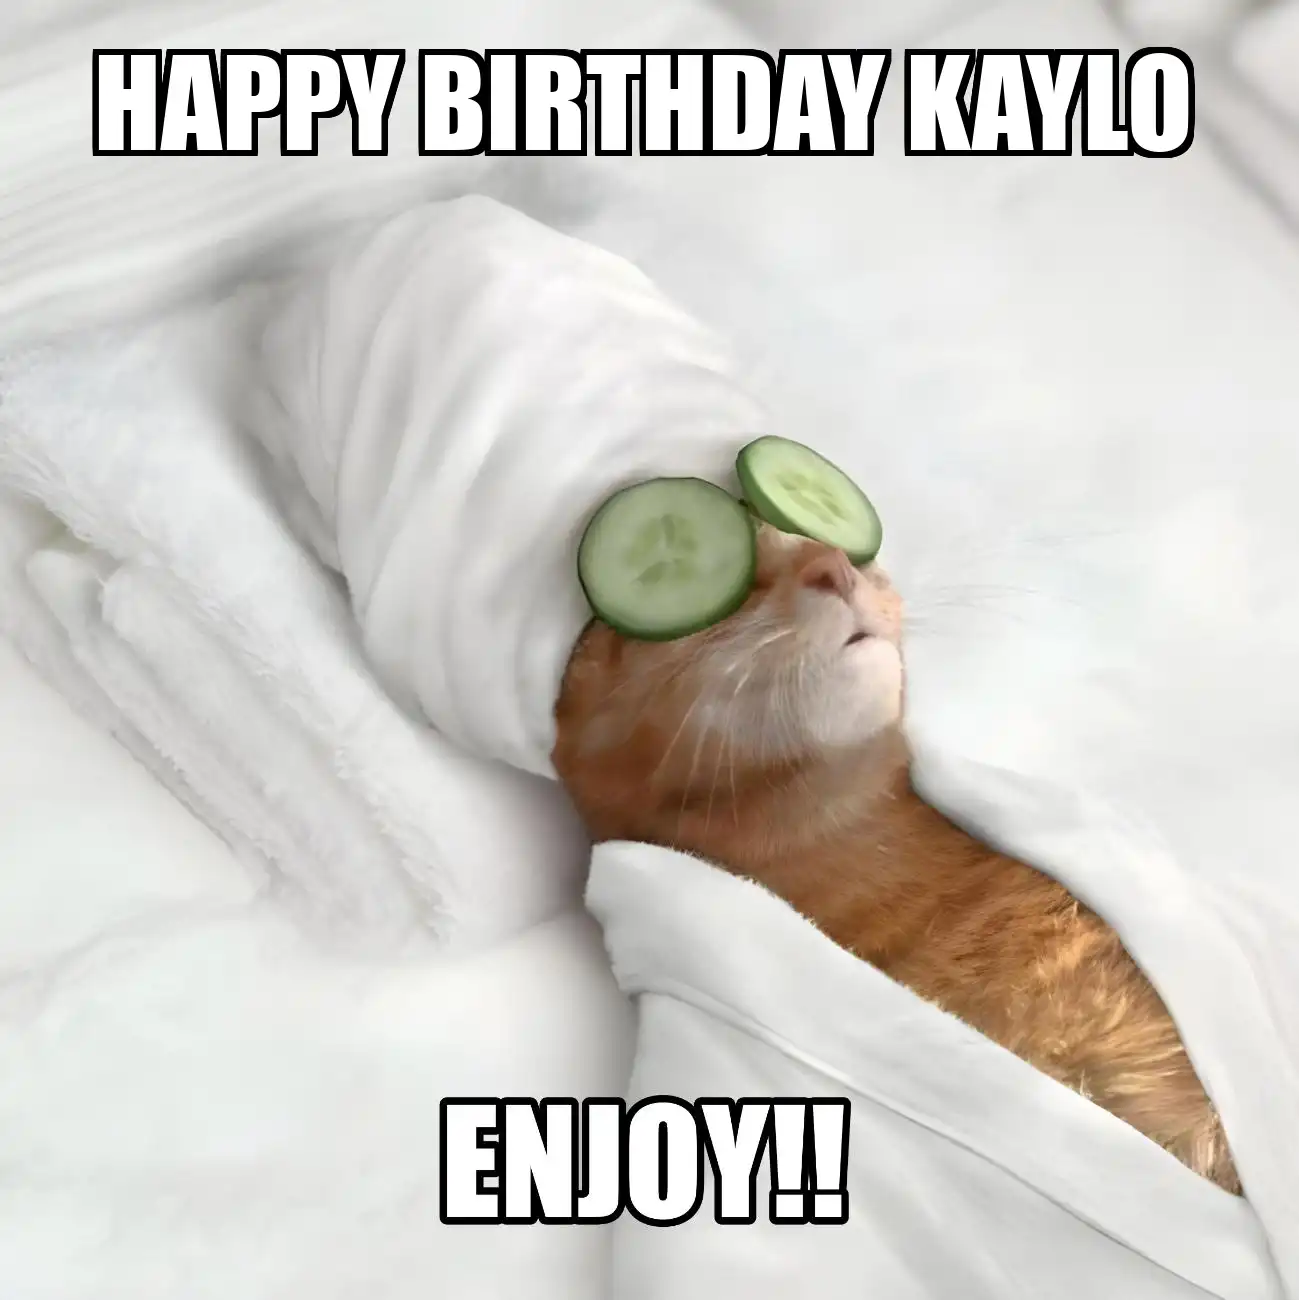 Happy Birthday Kaylo Enjoy Cat Meme